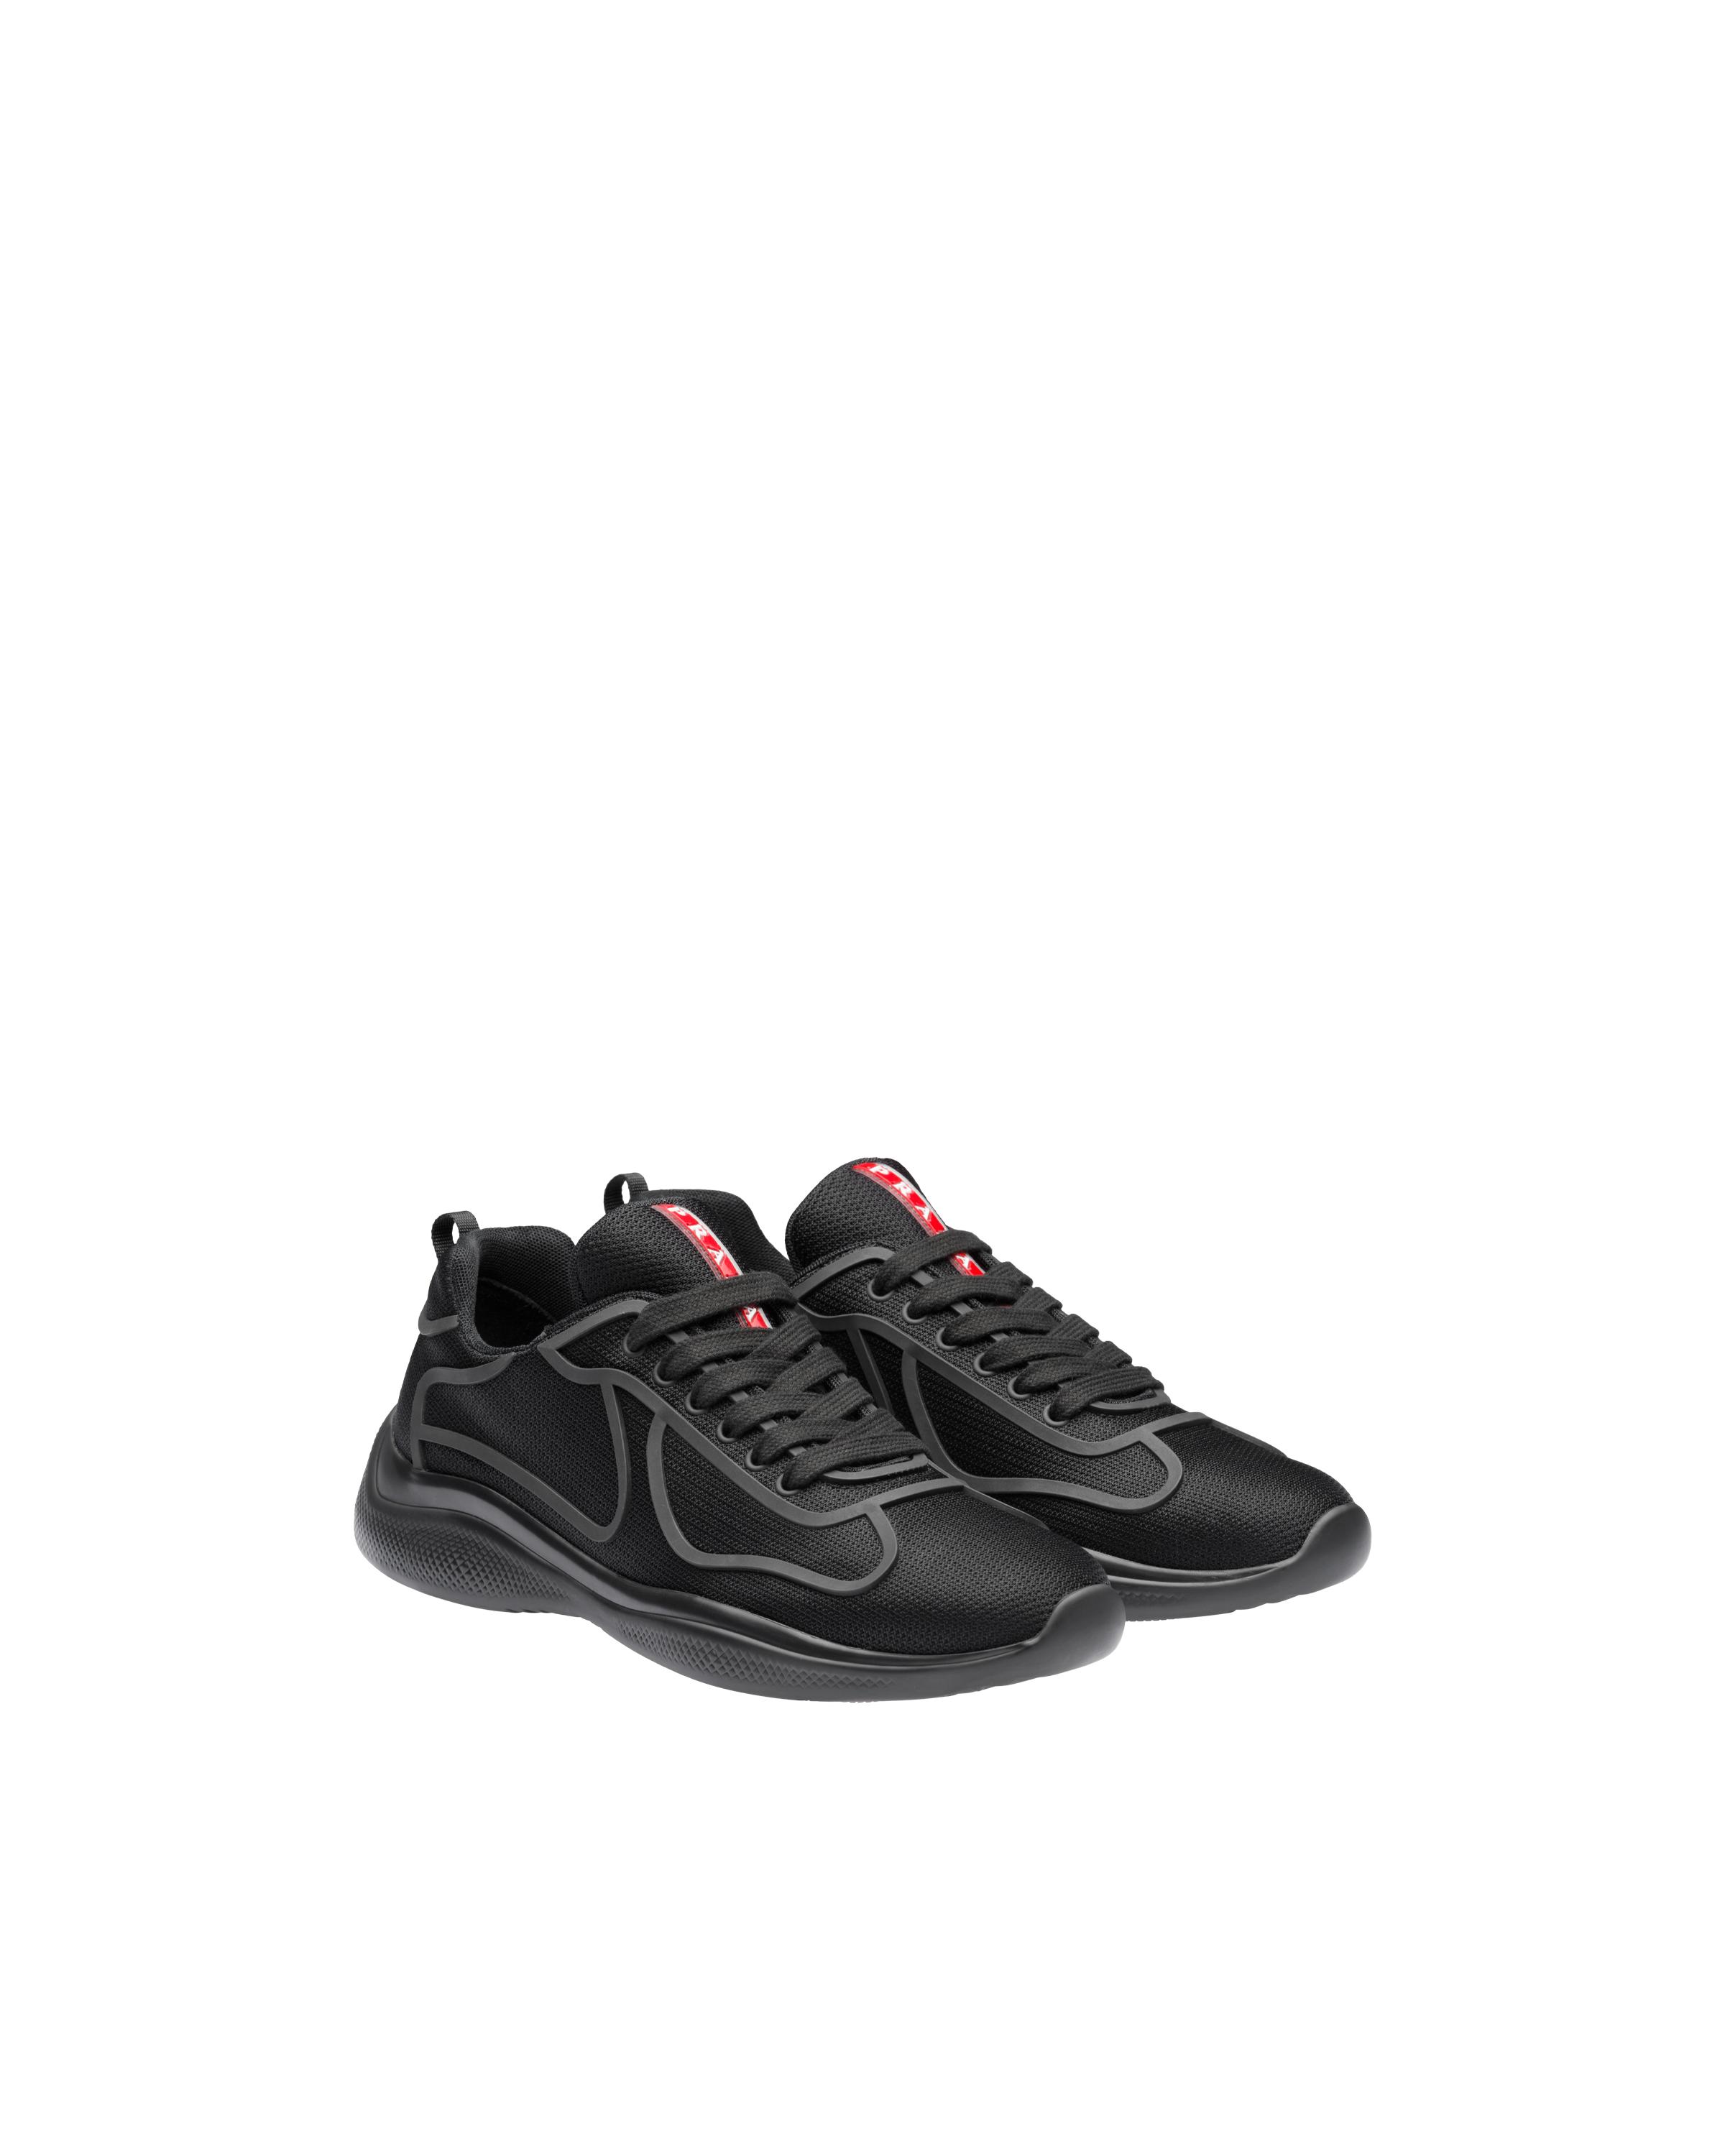 Prada Rubber Bike Fabric Sneakers in Black for Men - Lyst